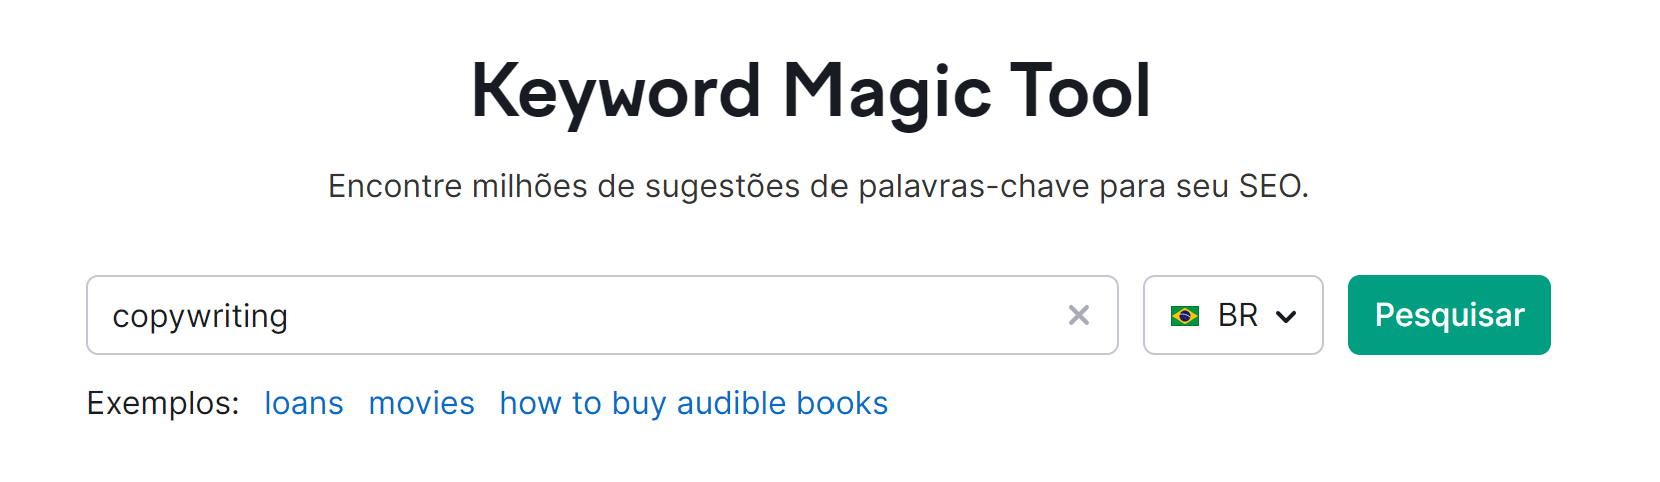 pesquisa de palavra-chave na ferramenta keyword magic tool